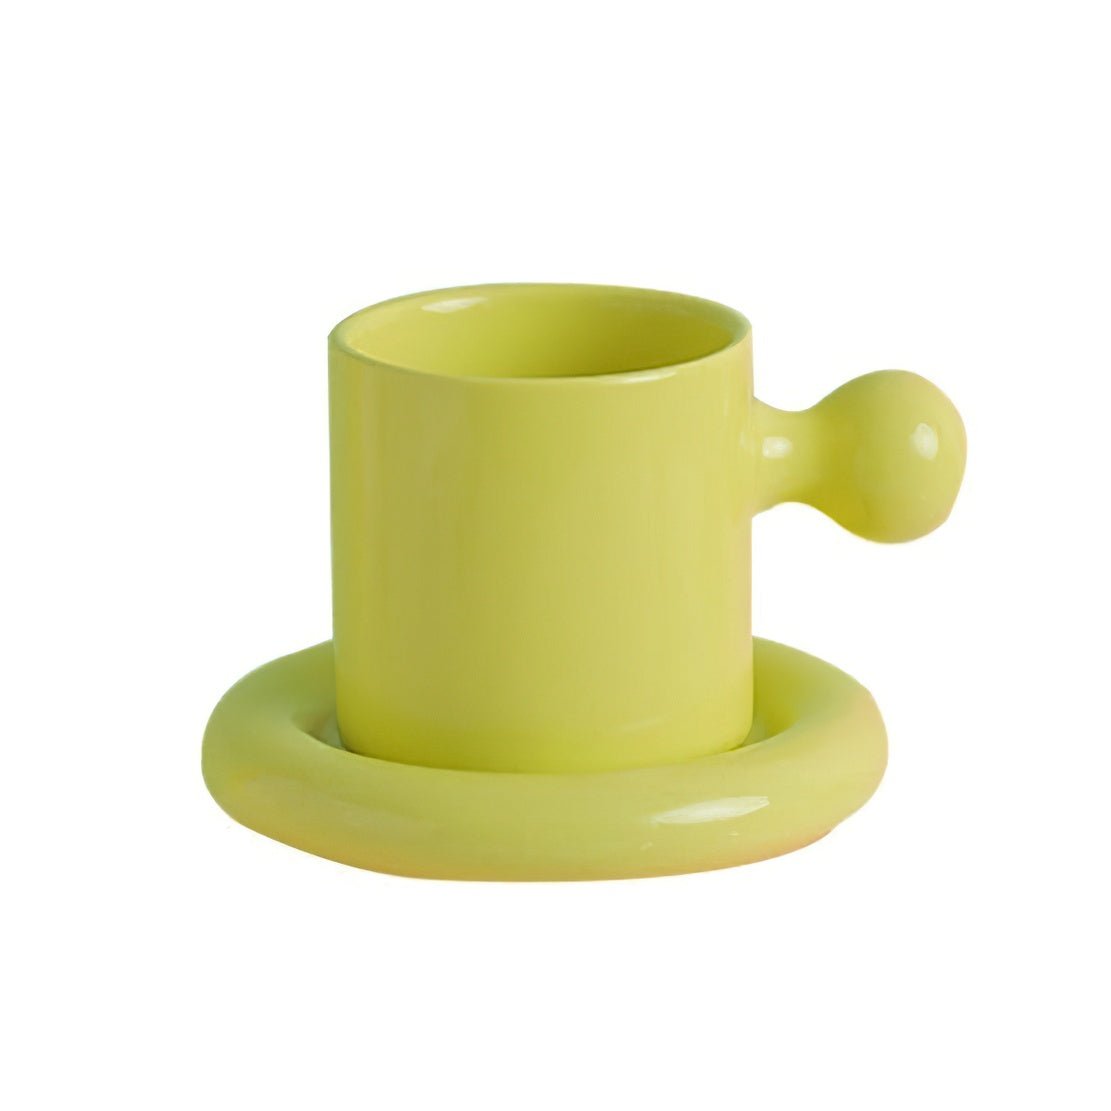 Green Shrek Ear Mug, ceramic knob handle mug with saucer.